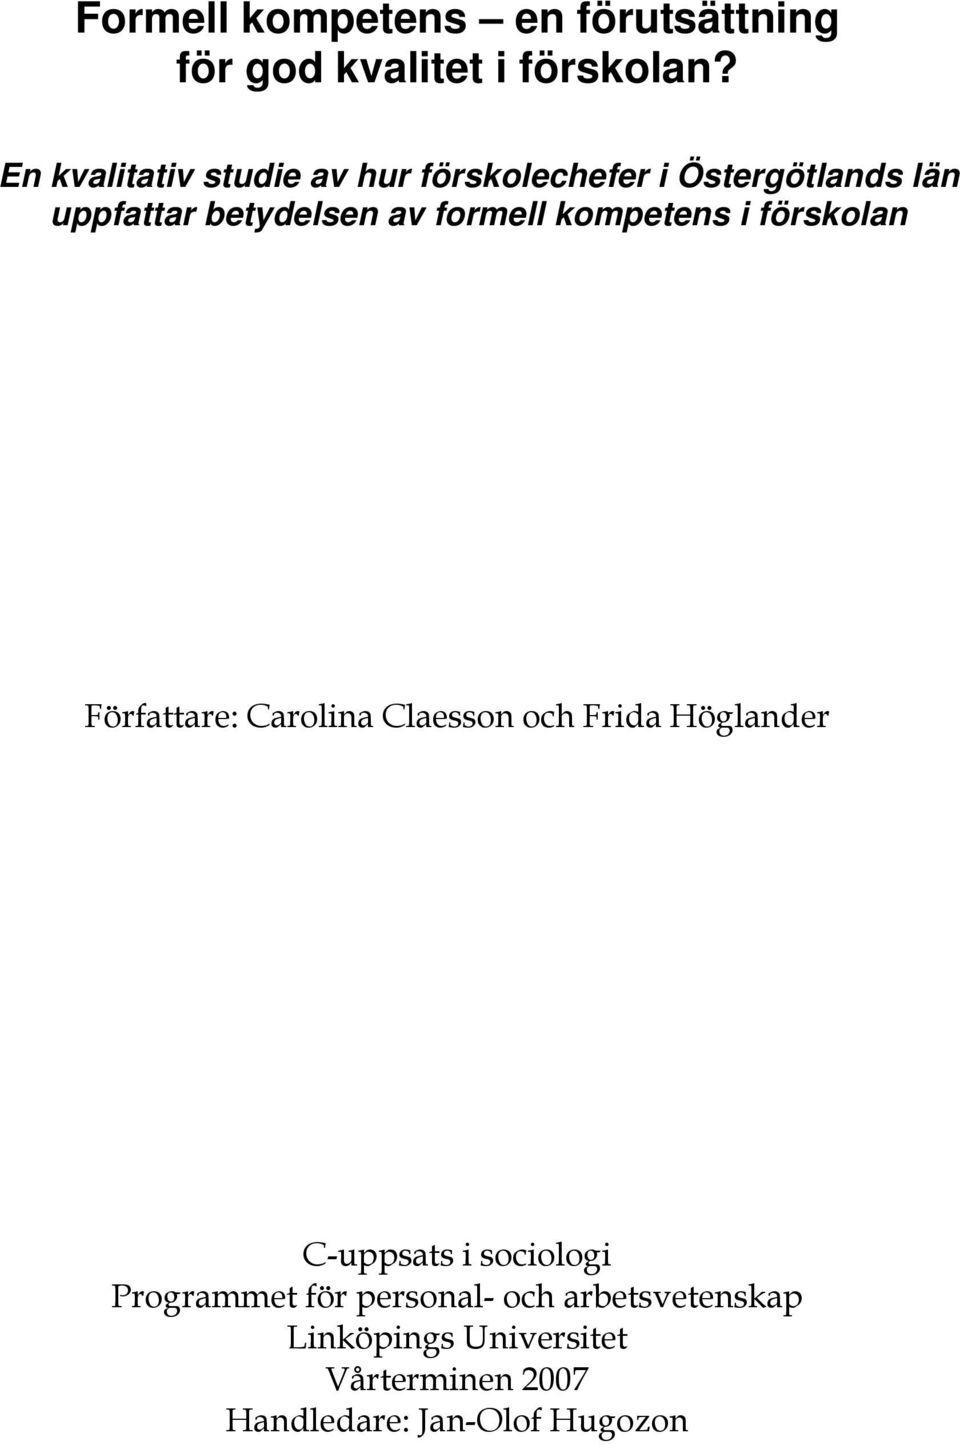 formell kompetens i förskolan Författare: Carolina Claesson och Frida Höglander C-uppsats i